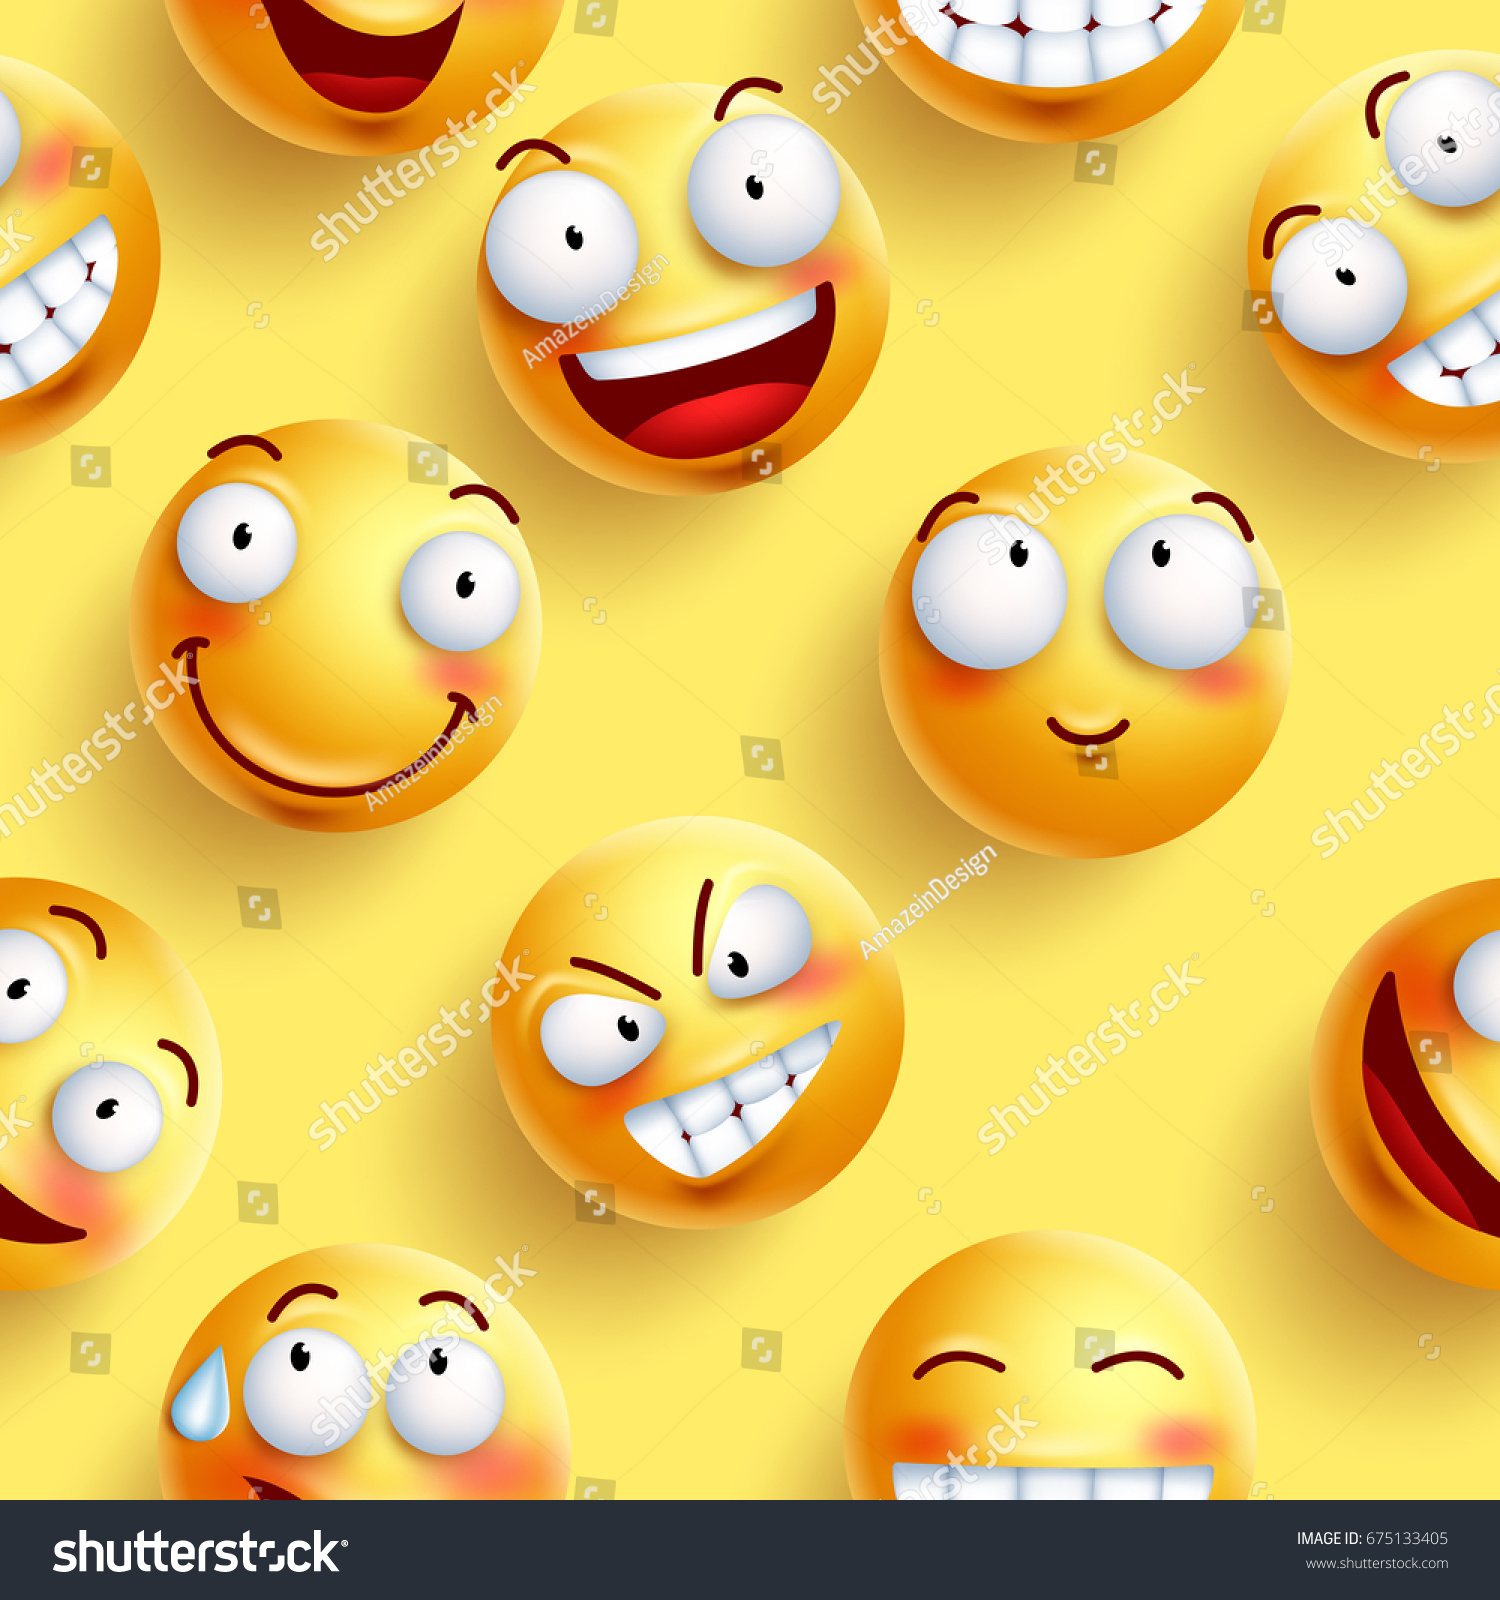 スマイルスの壁紙は 黄色のシームレスなベクター画像パターンで 幸せそうな顔と表情が連続しています ベクターイラスト のベクター画像素材 ロイヤリティフリー